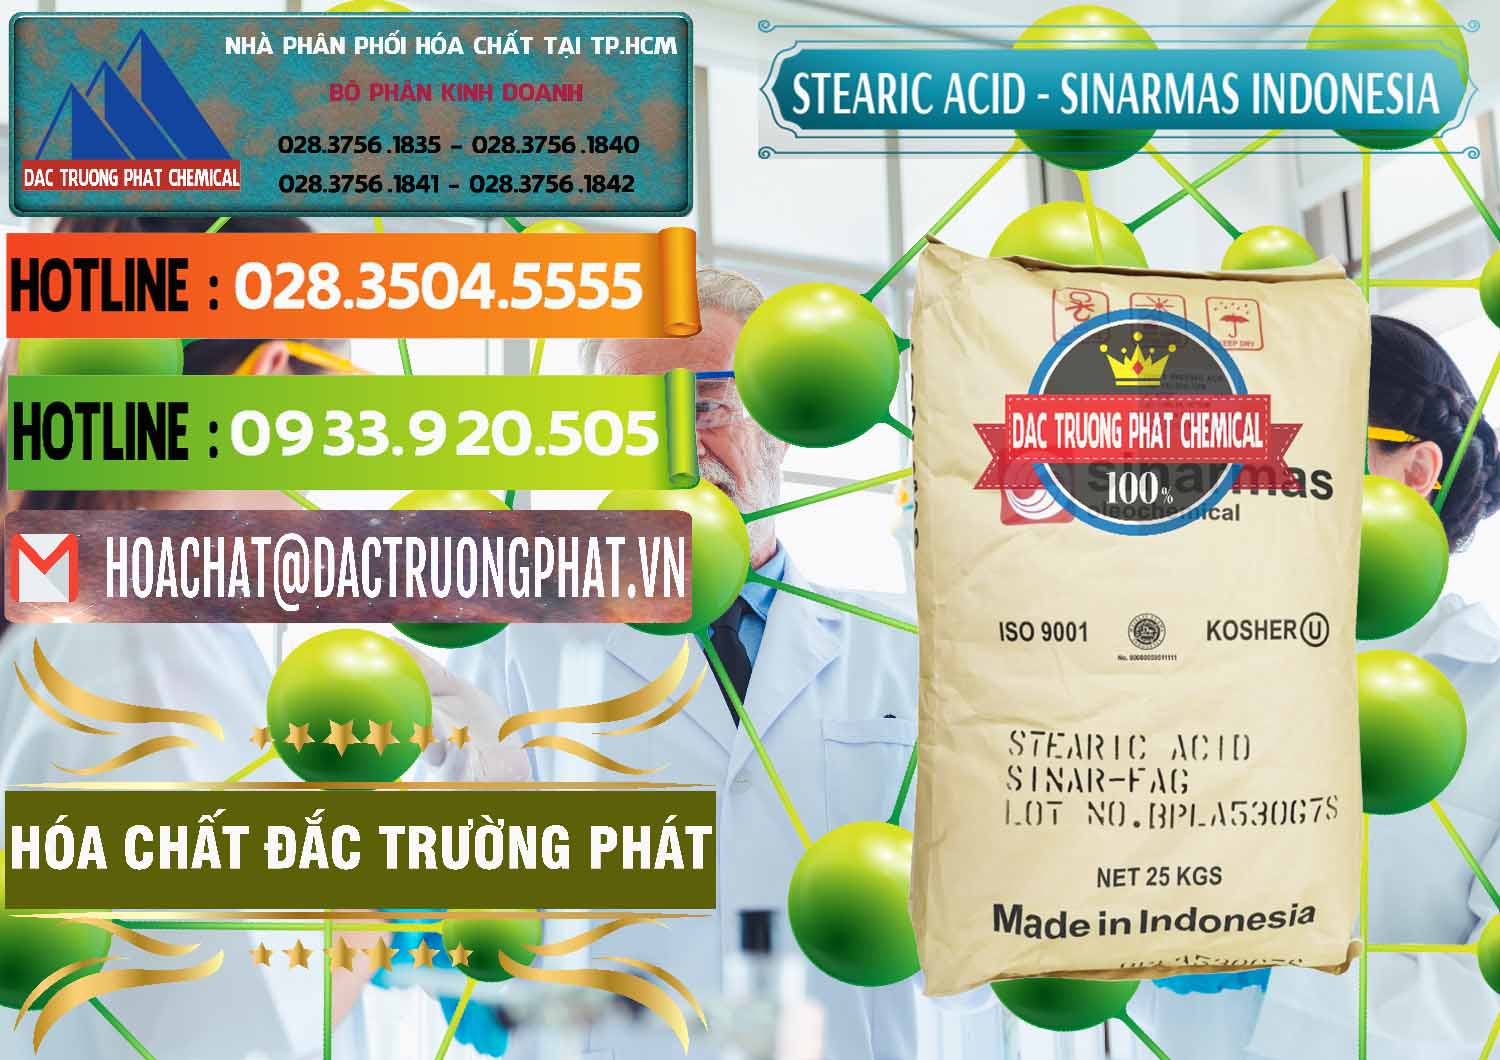 Đơn vị phân phối & bán Axit Stearic - Stearic Acid Sinarmas Indonesia - 0389 - Cty bán và cung cấp hóa chất tại TP.HCM - cungcaphoachat.com.vn